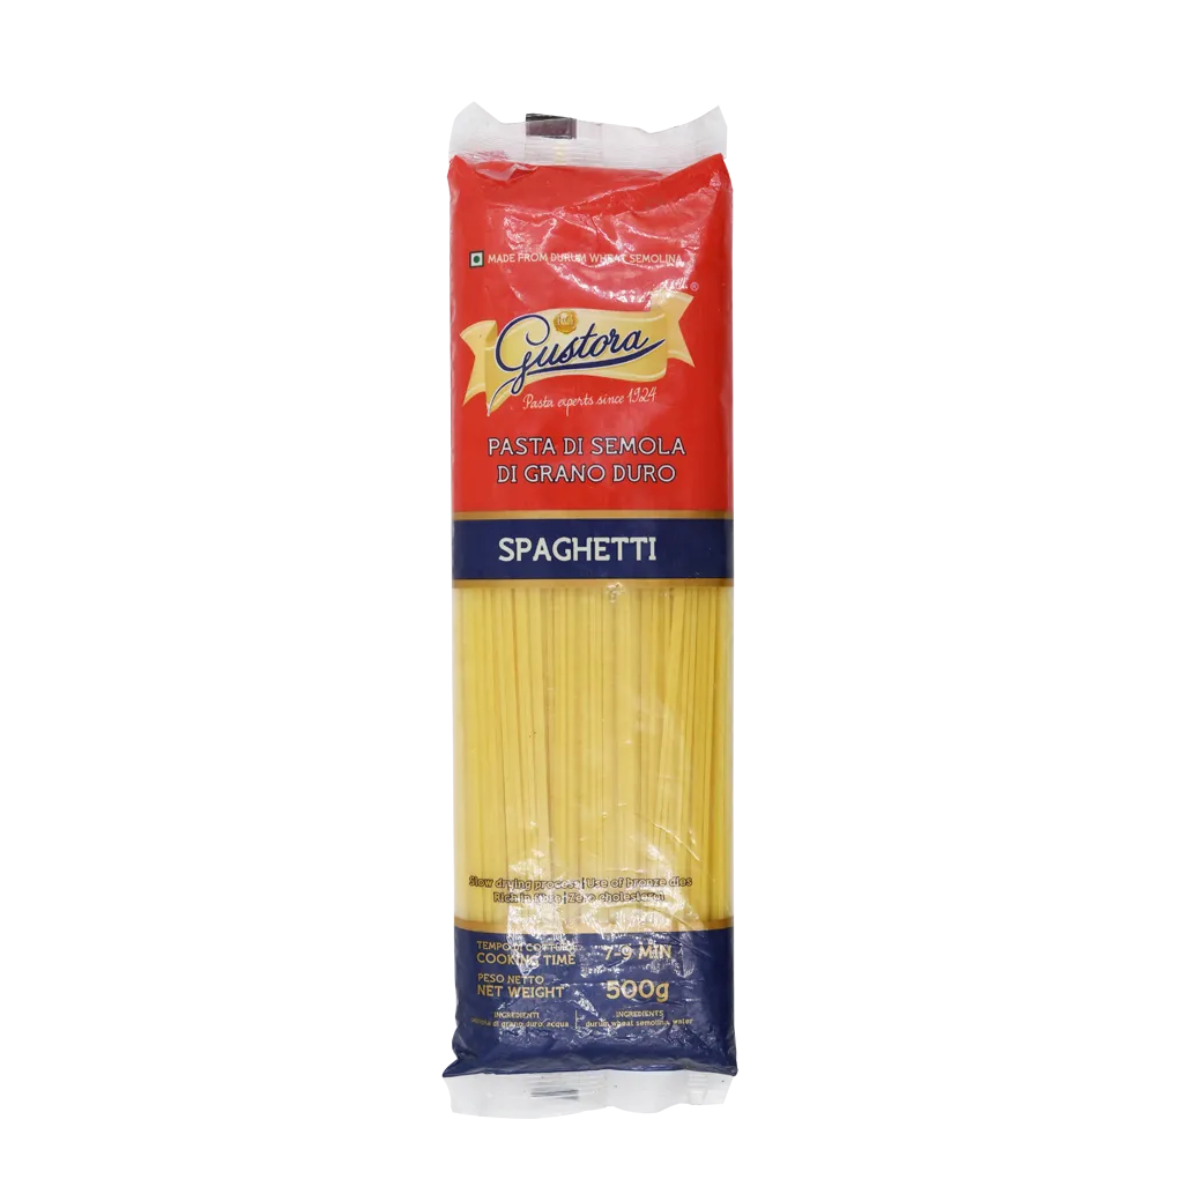 Gustora Pasta Di Semola Di Grano Duro - Spaghetti - 500g